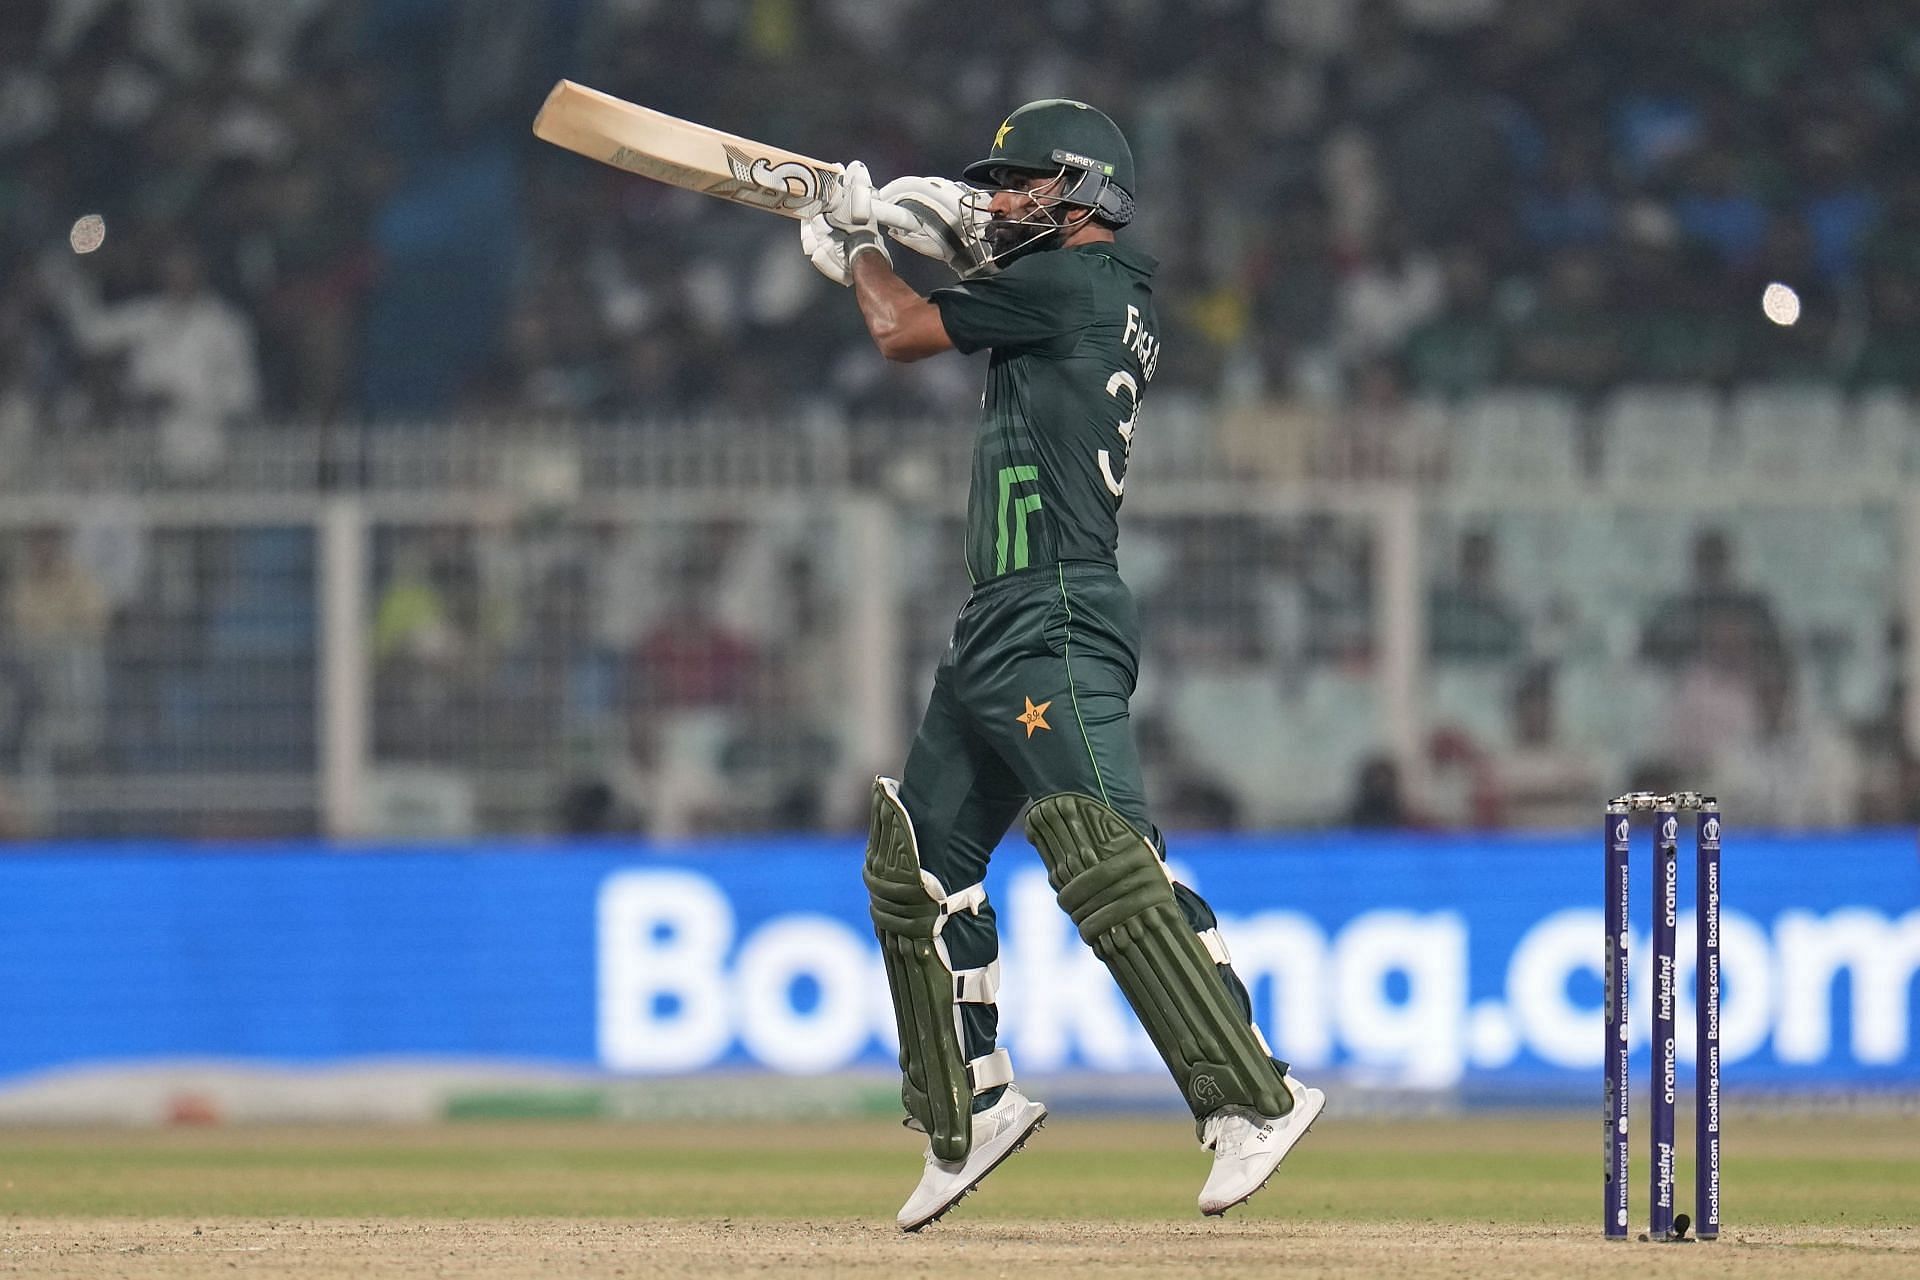 फखर जमान ने बांग्लादेश के खिलाफ जबरदस्त पारी खेली